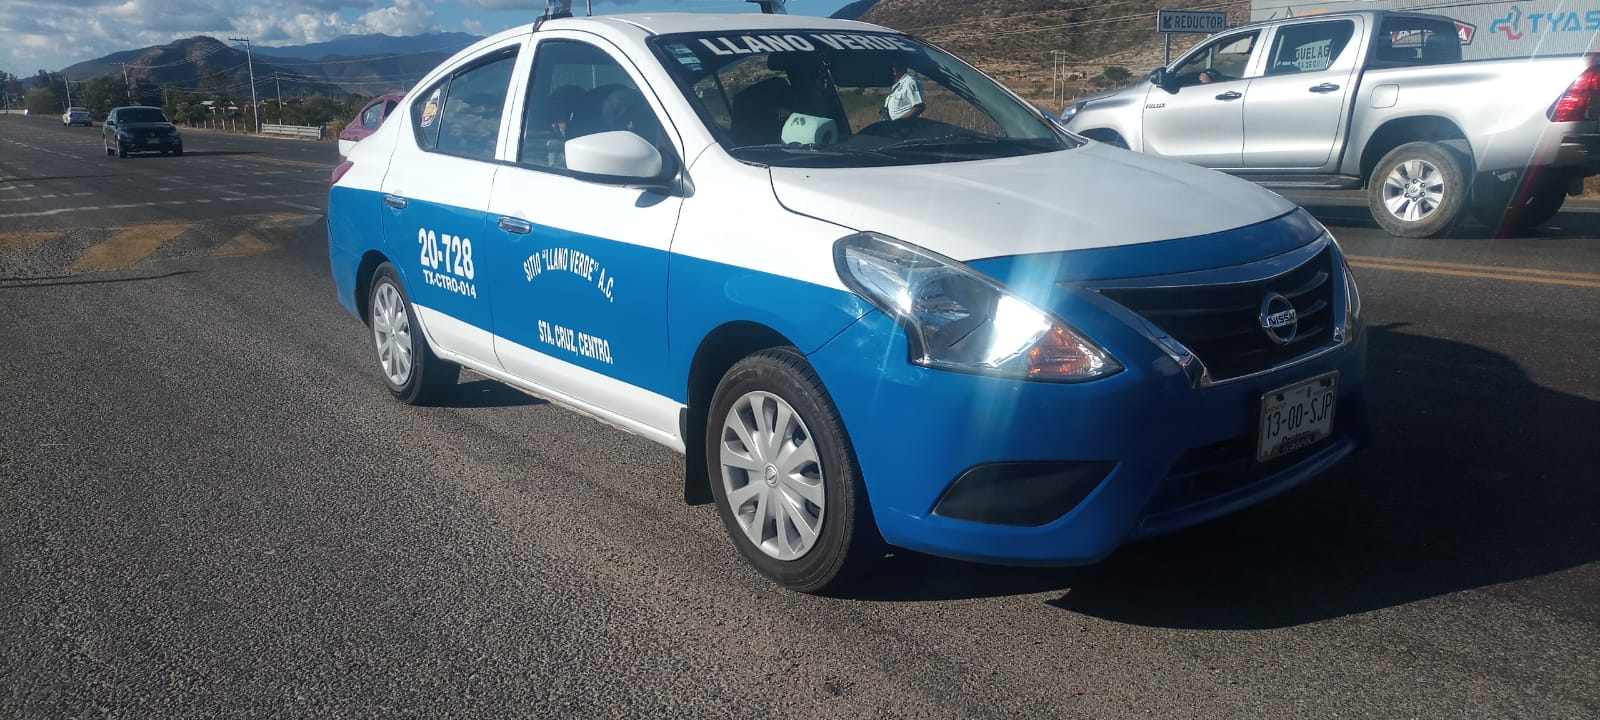 Recuperan tres vehículos con reporte de robo en Oaxaca | El Imparcial de Oaxaca